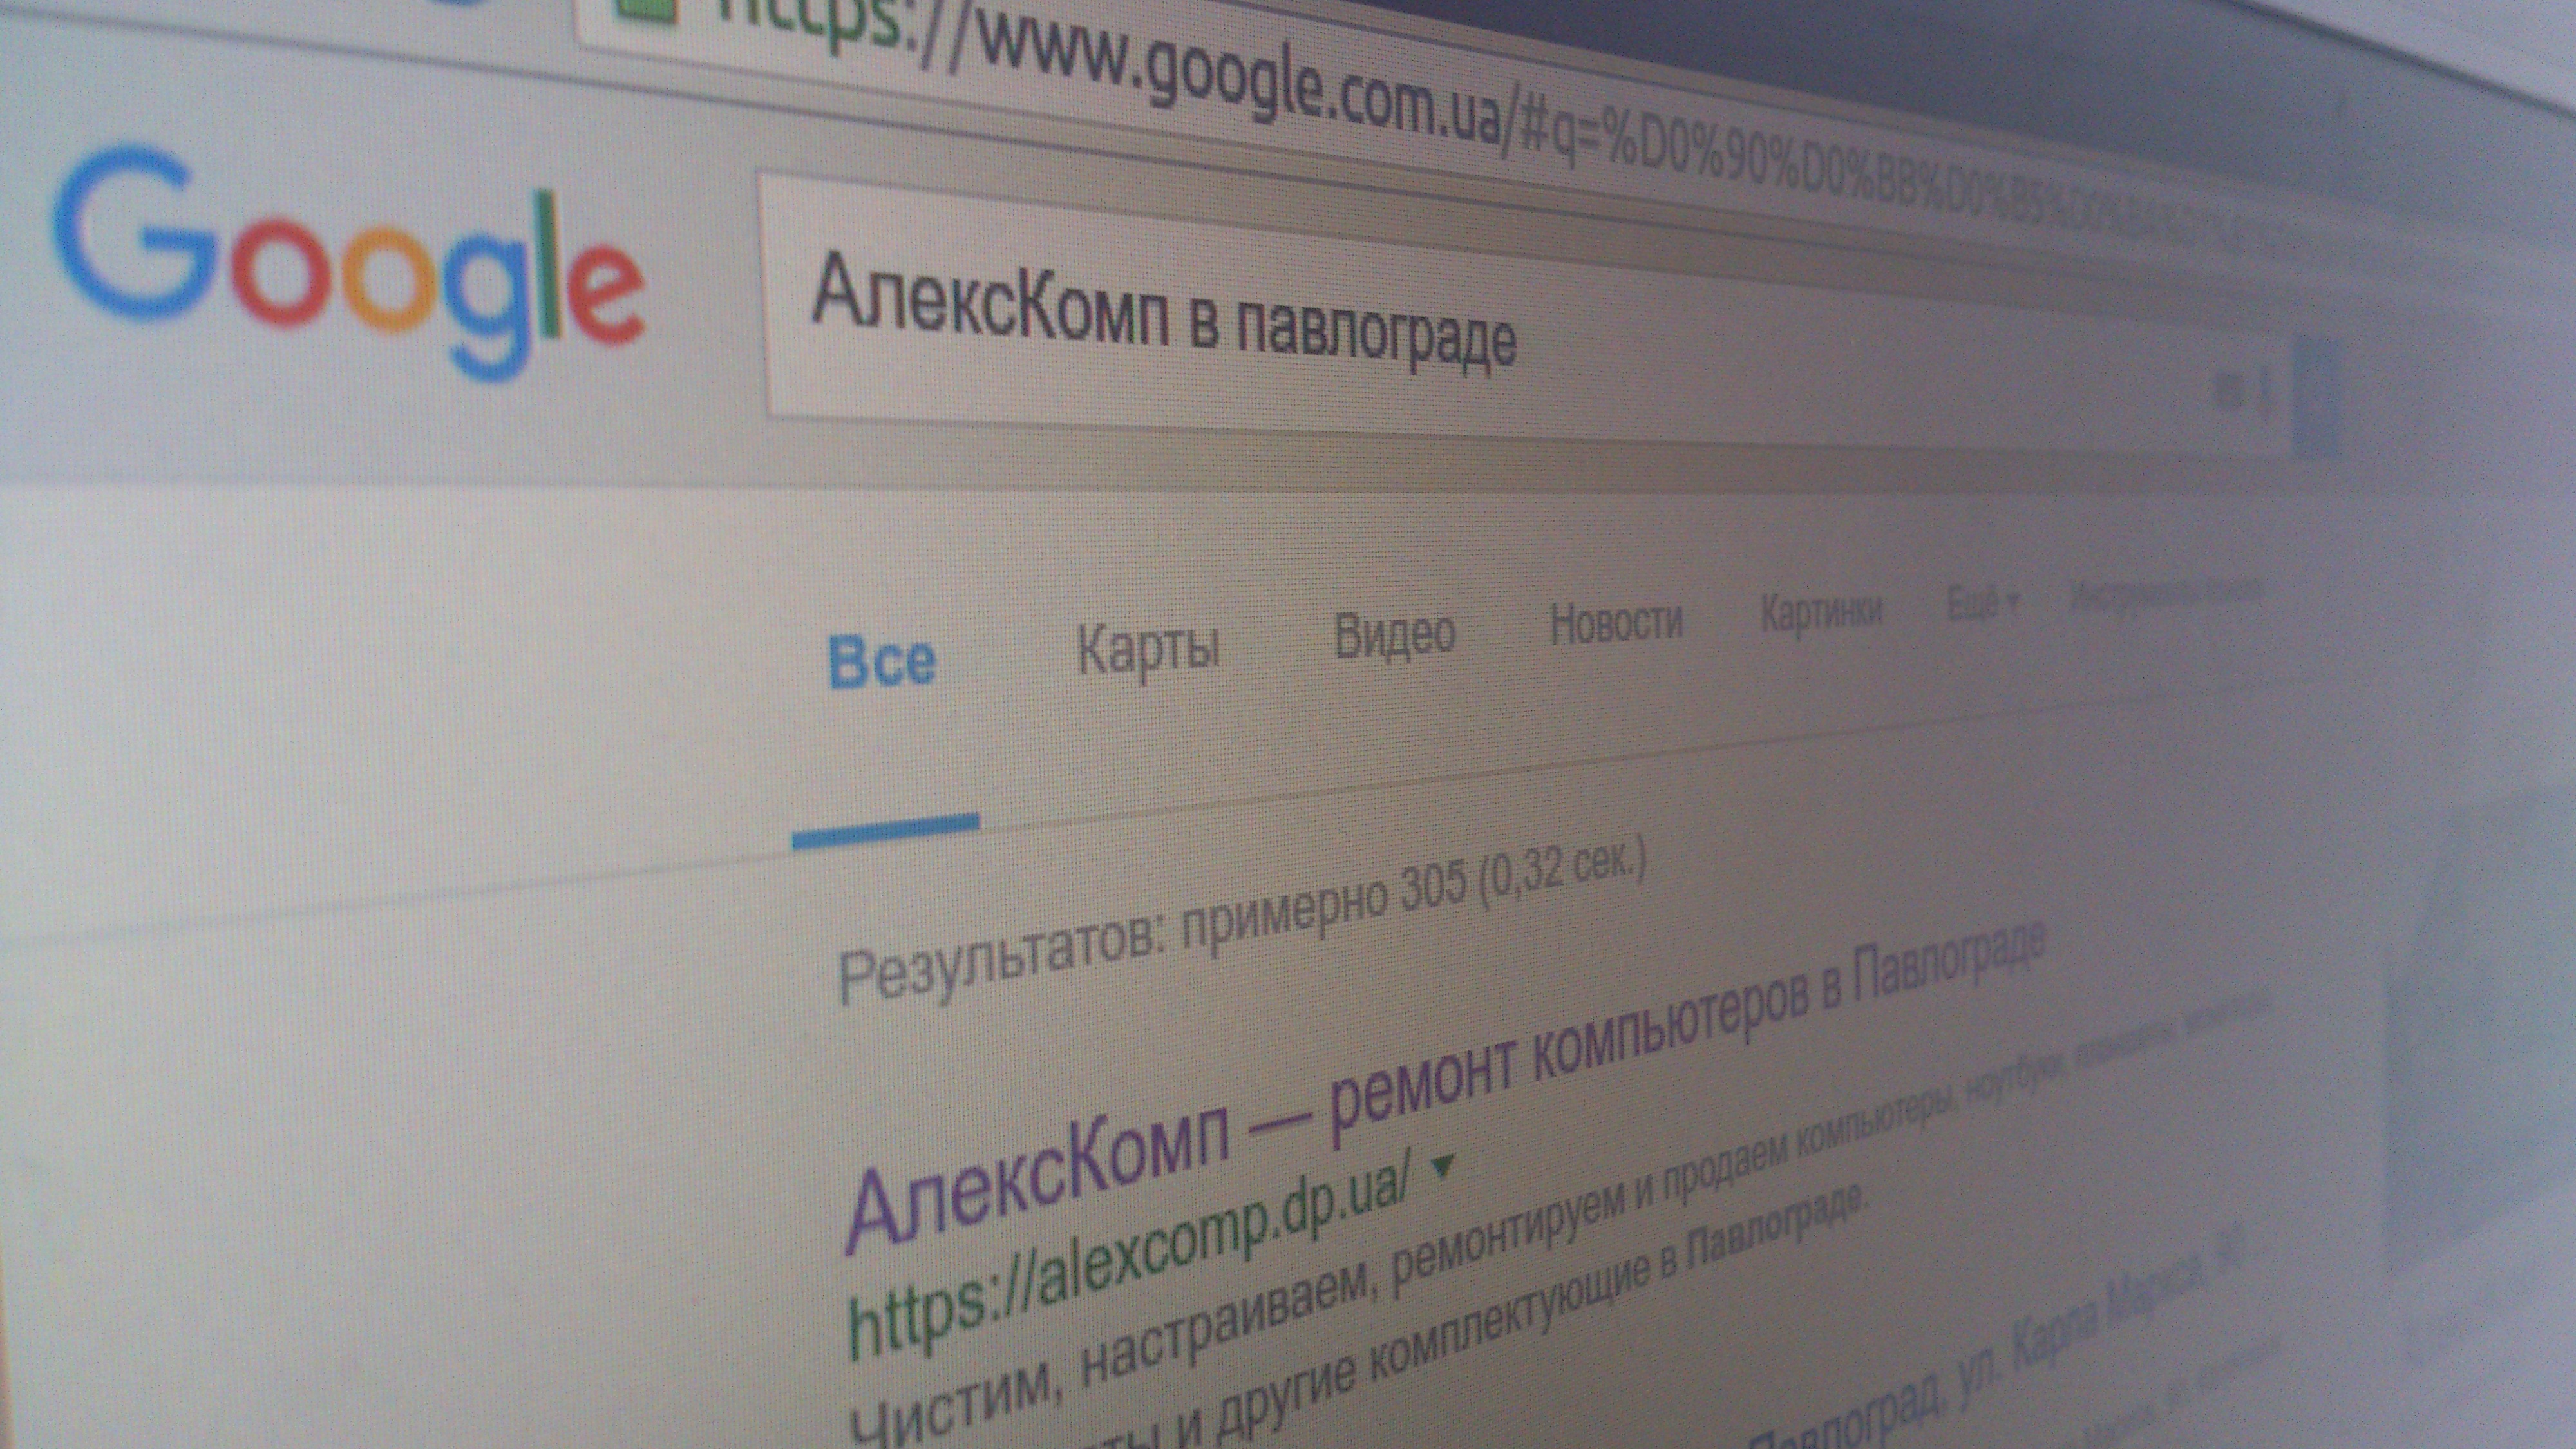 8 трюков для быстрого поиска в Google, которыми мало кто пользуется / Статьи / АлексКомп в Павлограде